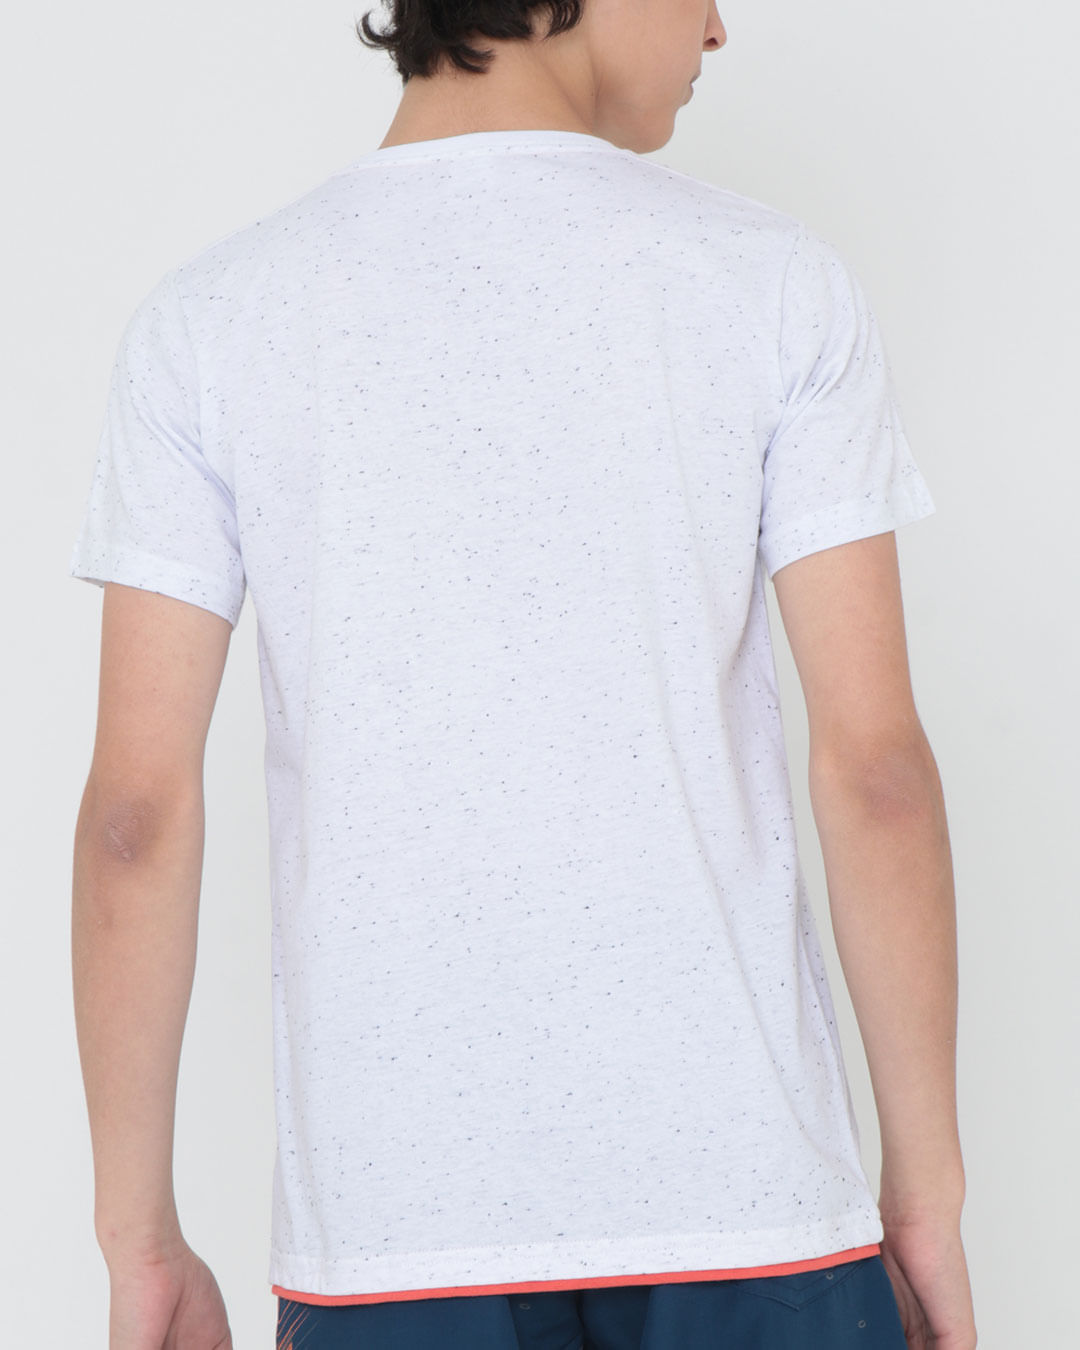 Camiseta-30271-Mc-M1016-Tro---Branco